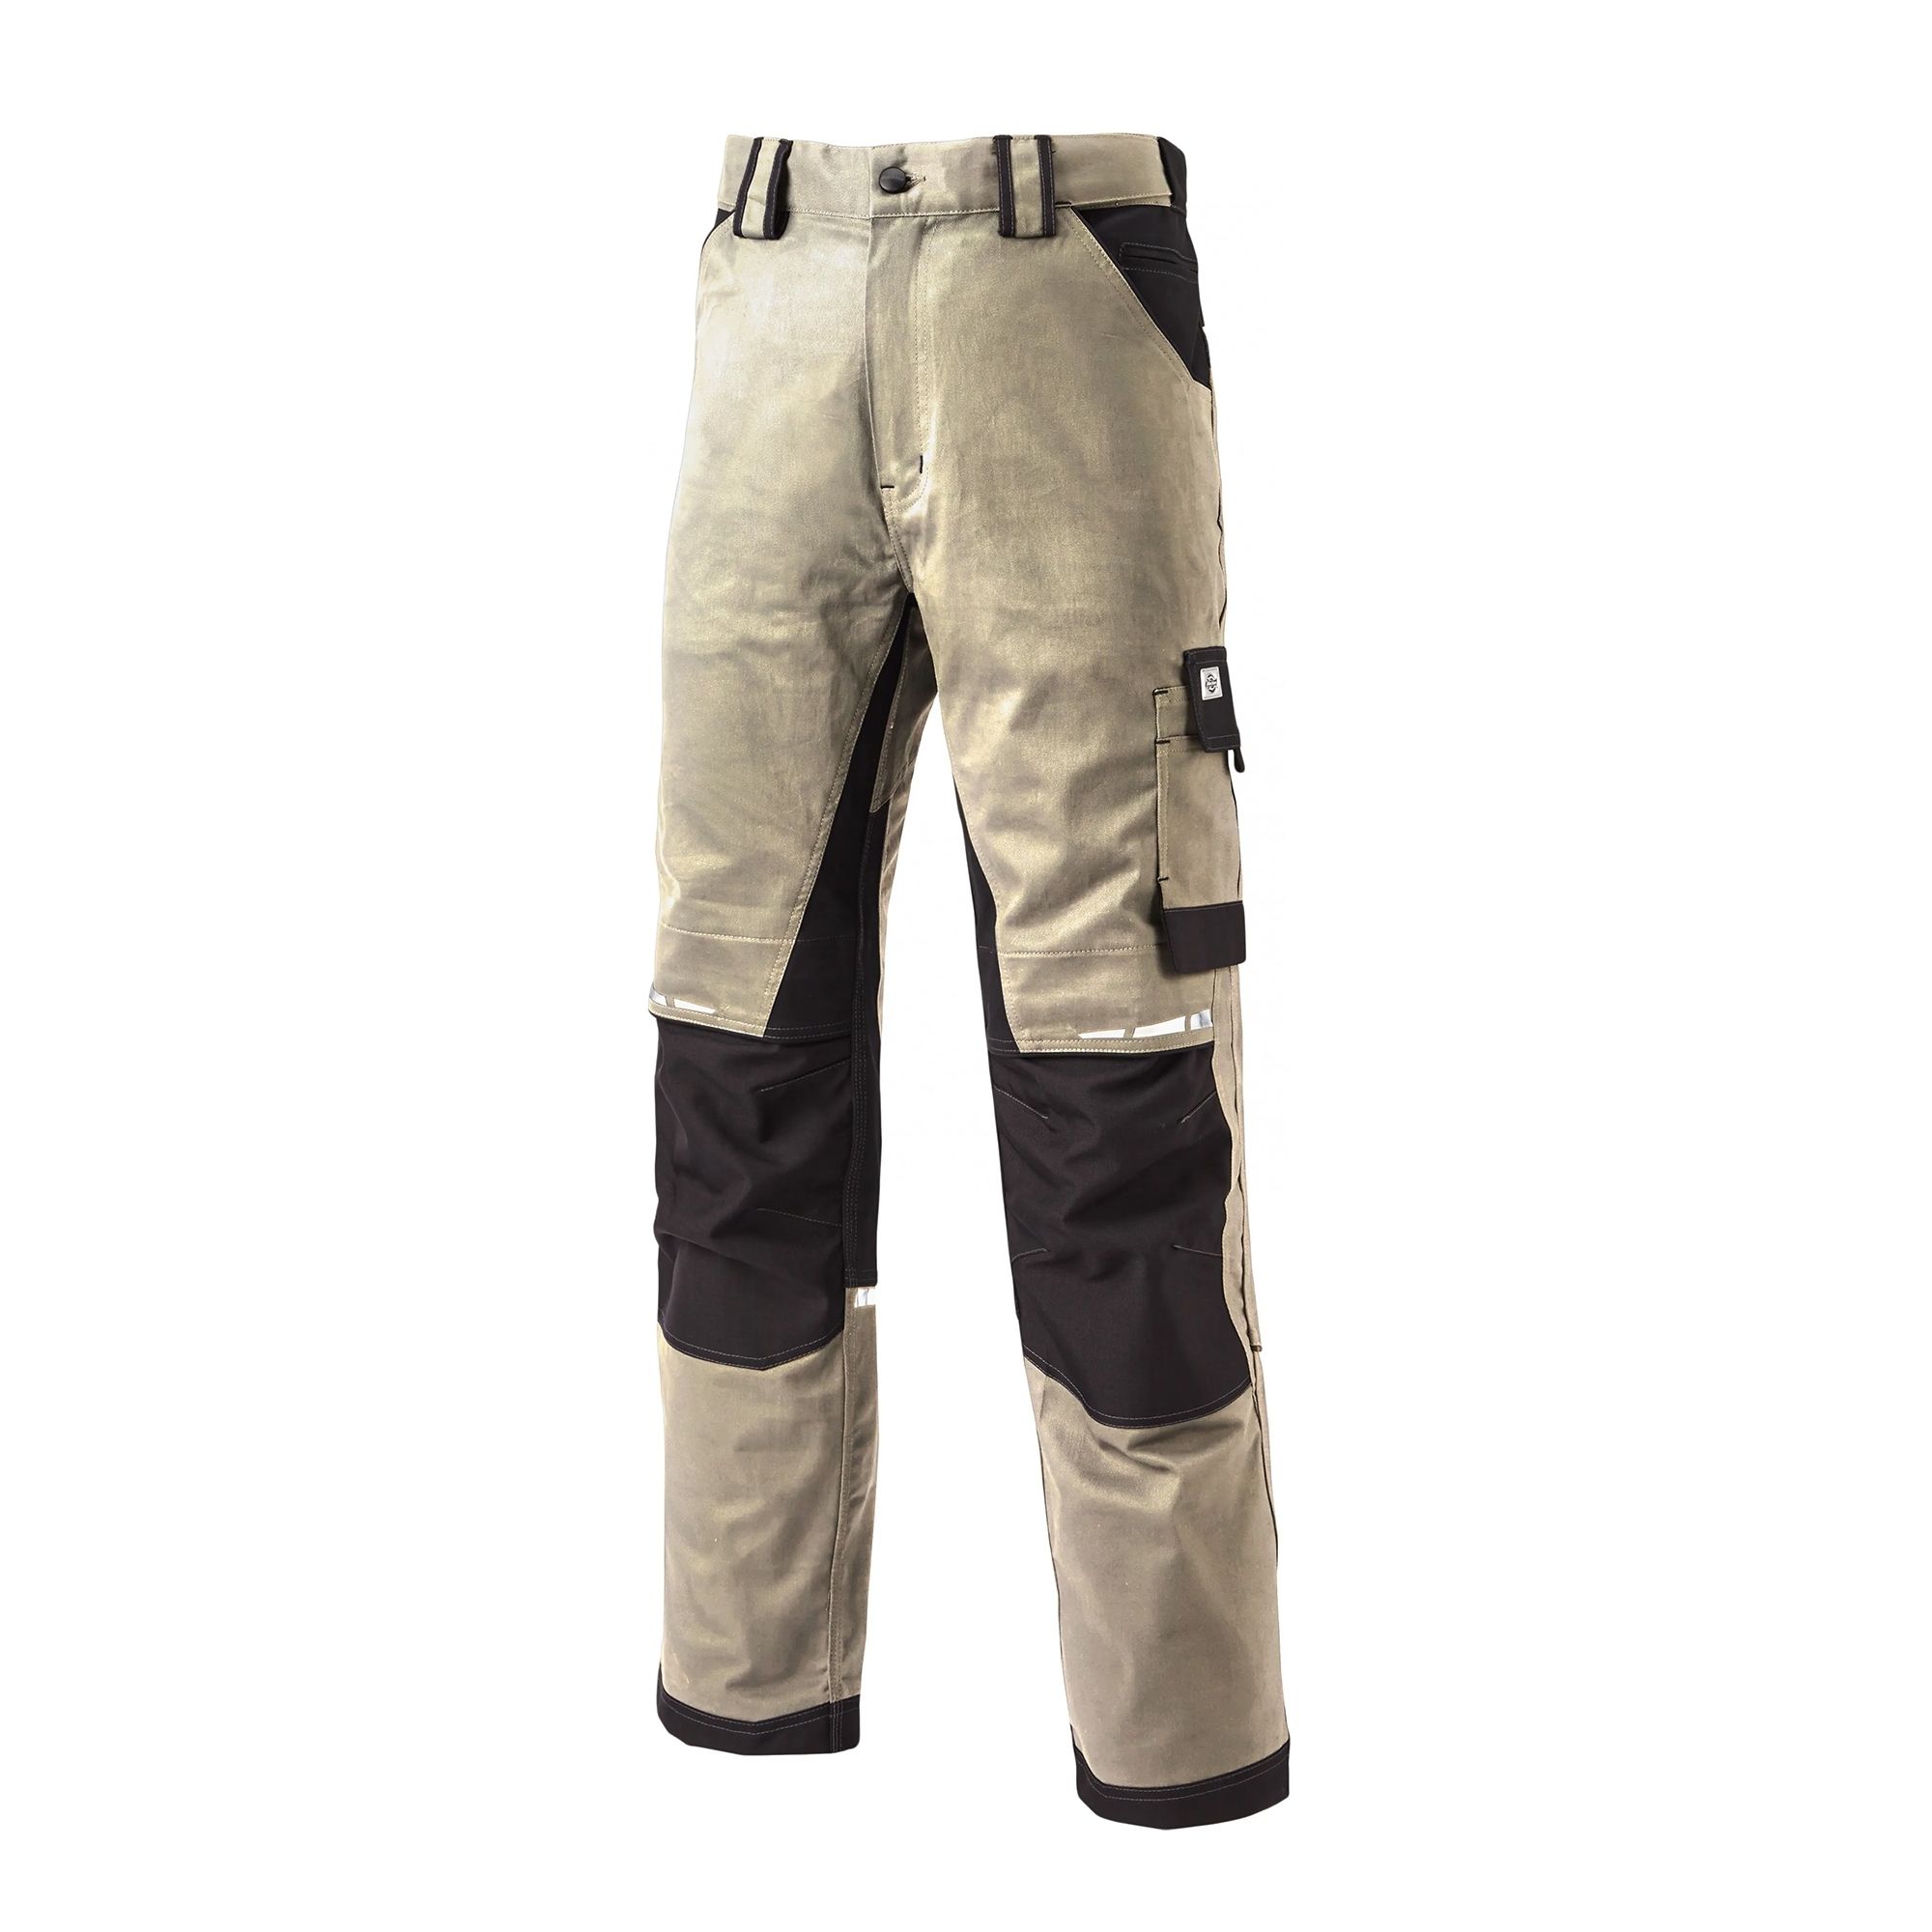 Dickies Mens Flex Trousers Premium Durable Industrial Work Pants Wd4901 